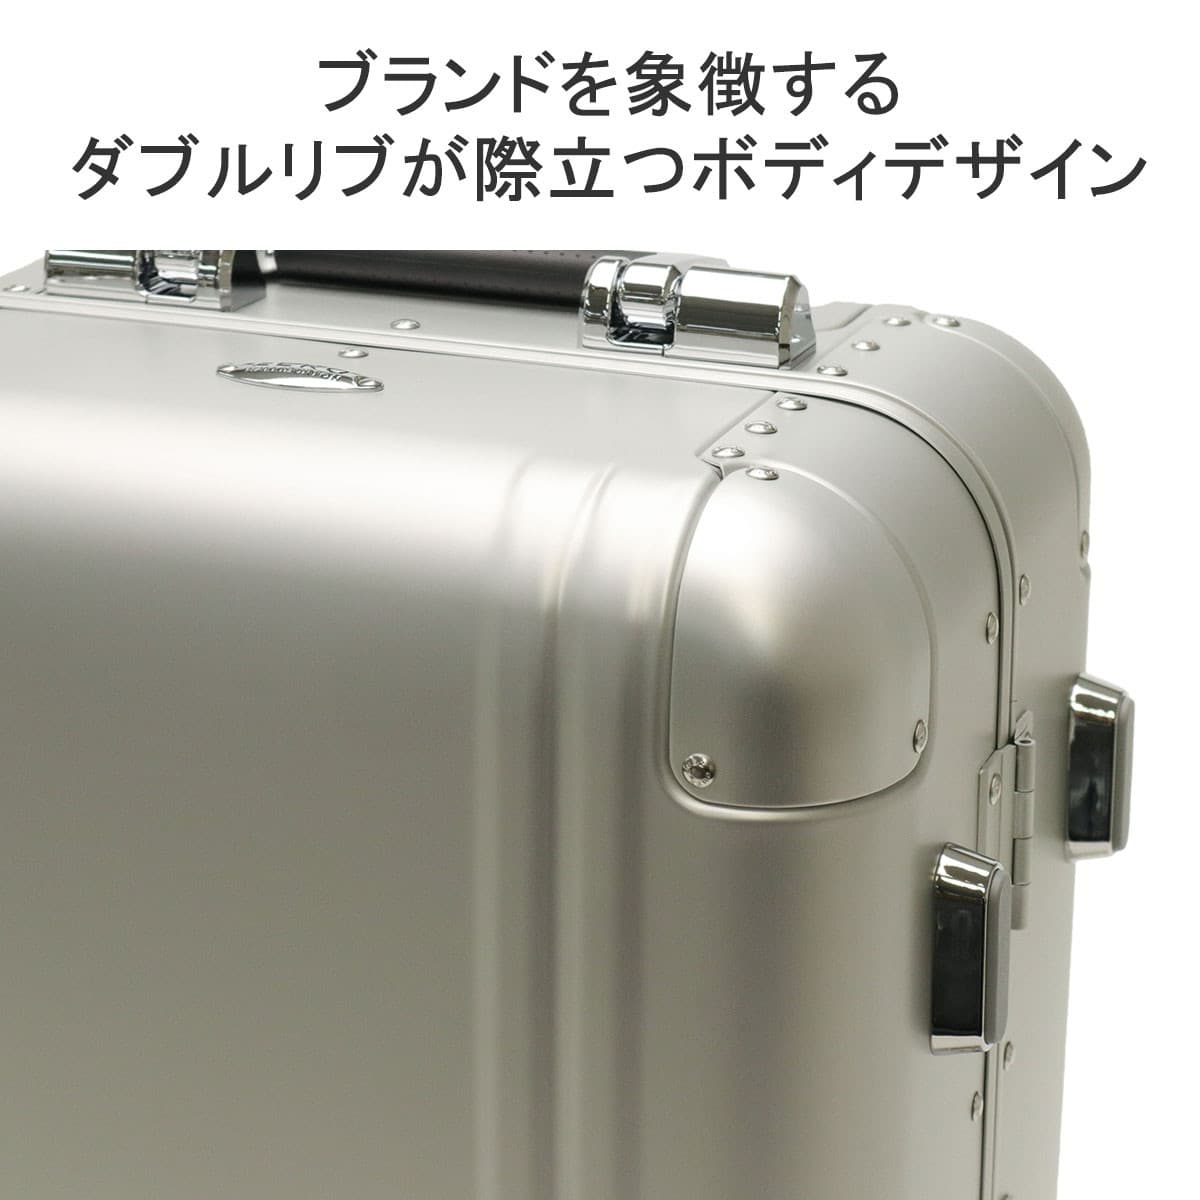 [ゼロハリバートン] スーツケース Classic Aluminum 3.0 機内持込可 2~3泊 双輪ベアリング内臓キャスター No.94402